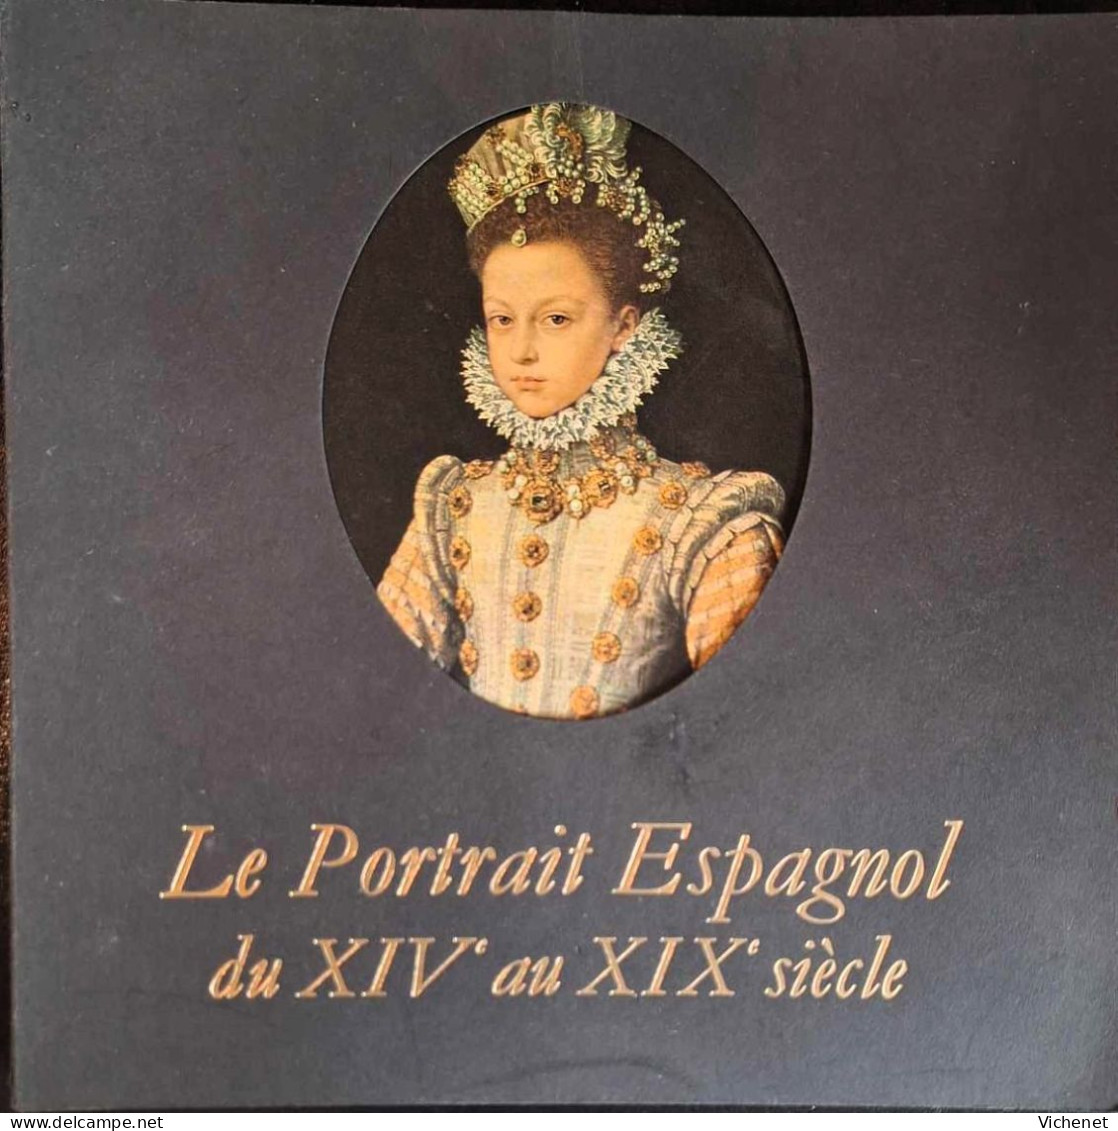 Le Portrait Espagnol Du XIVe Au XIXe Siècle - Catalogue D' Exposition  - Bruxelles - 1970 - Art